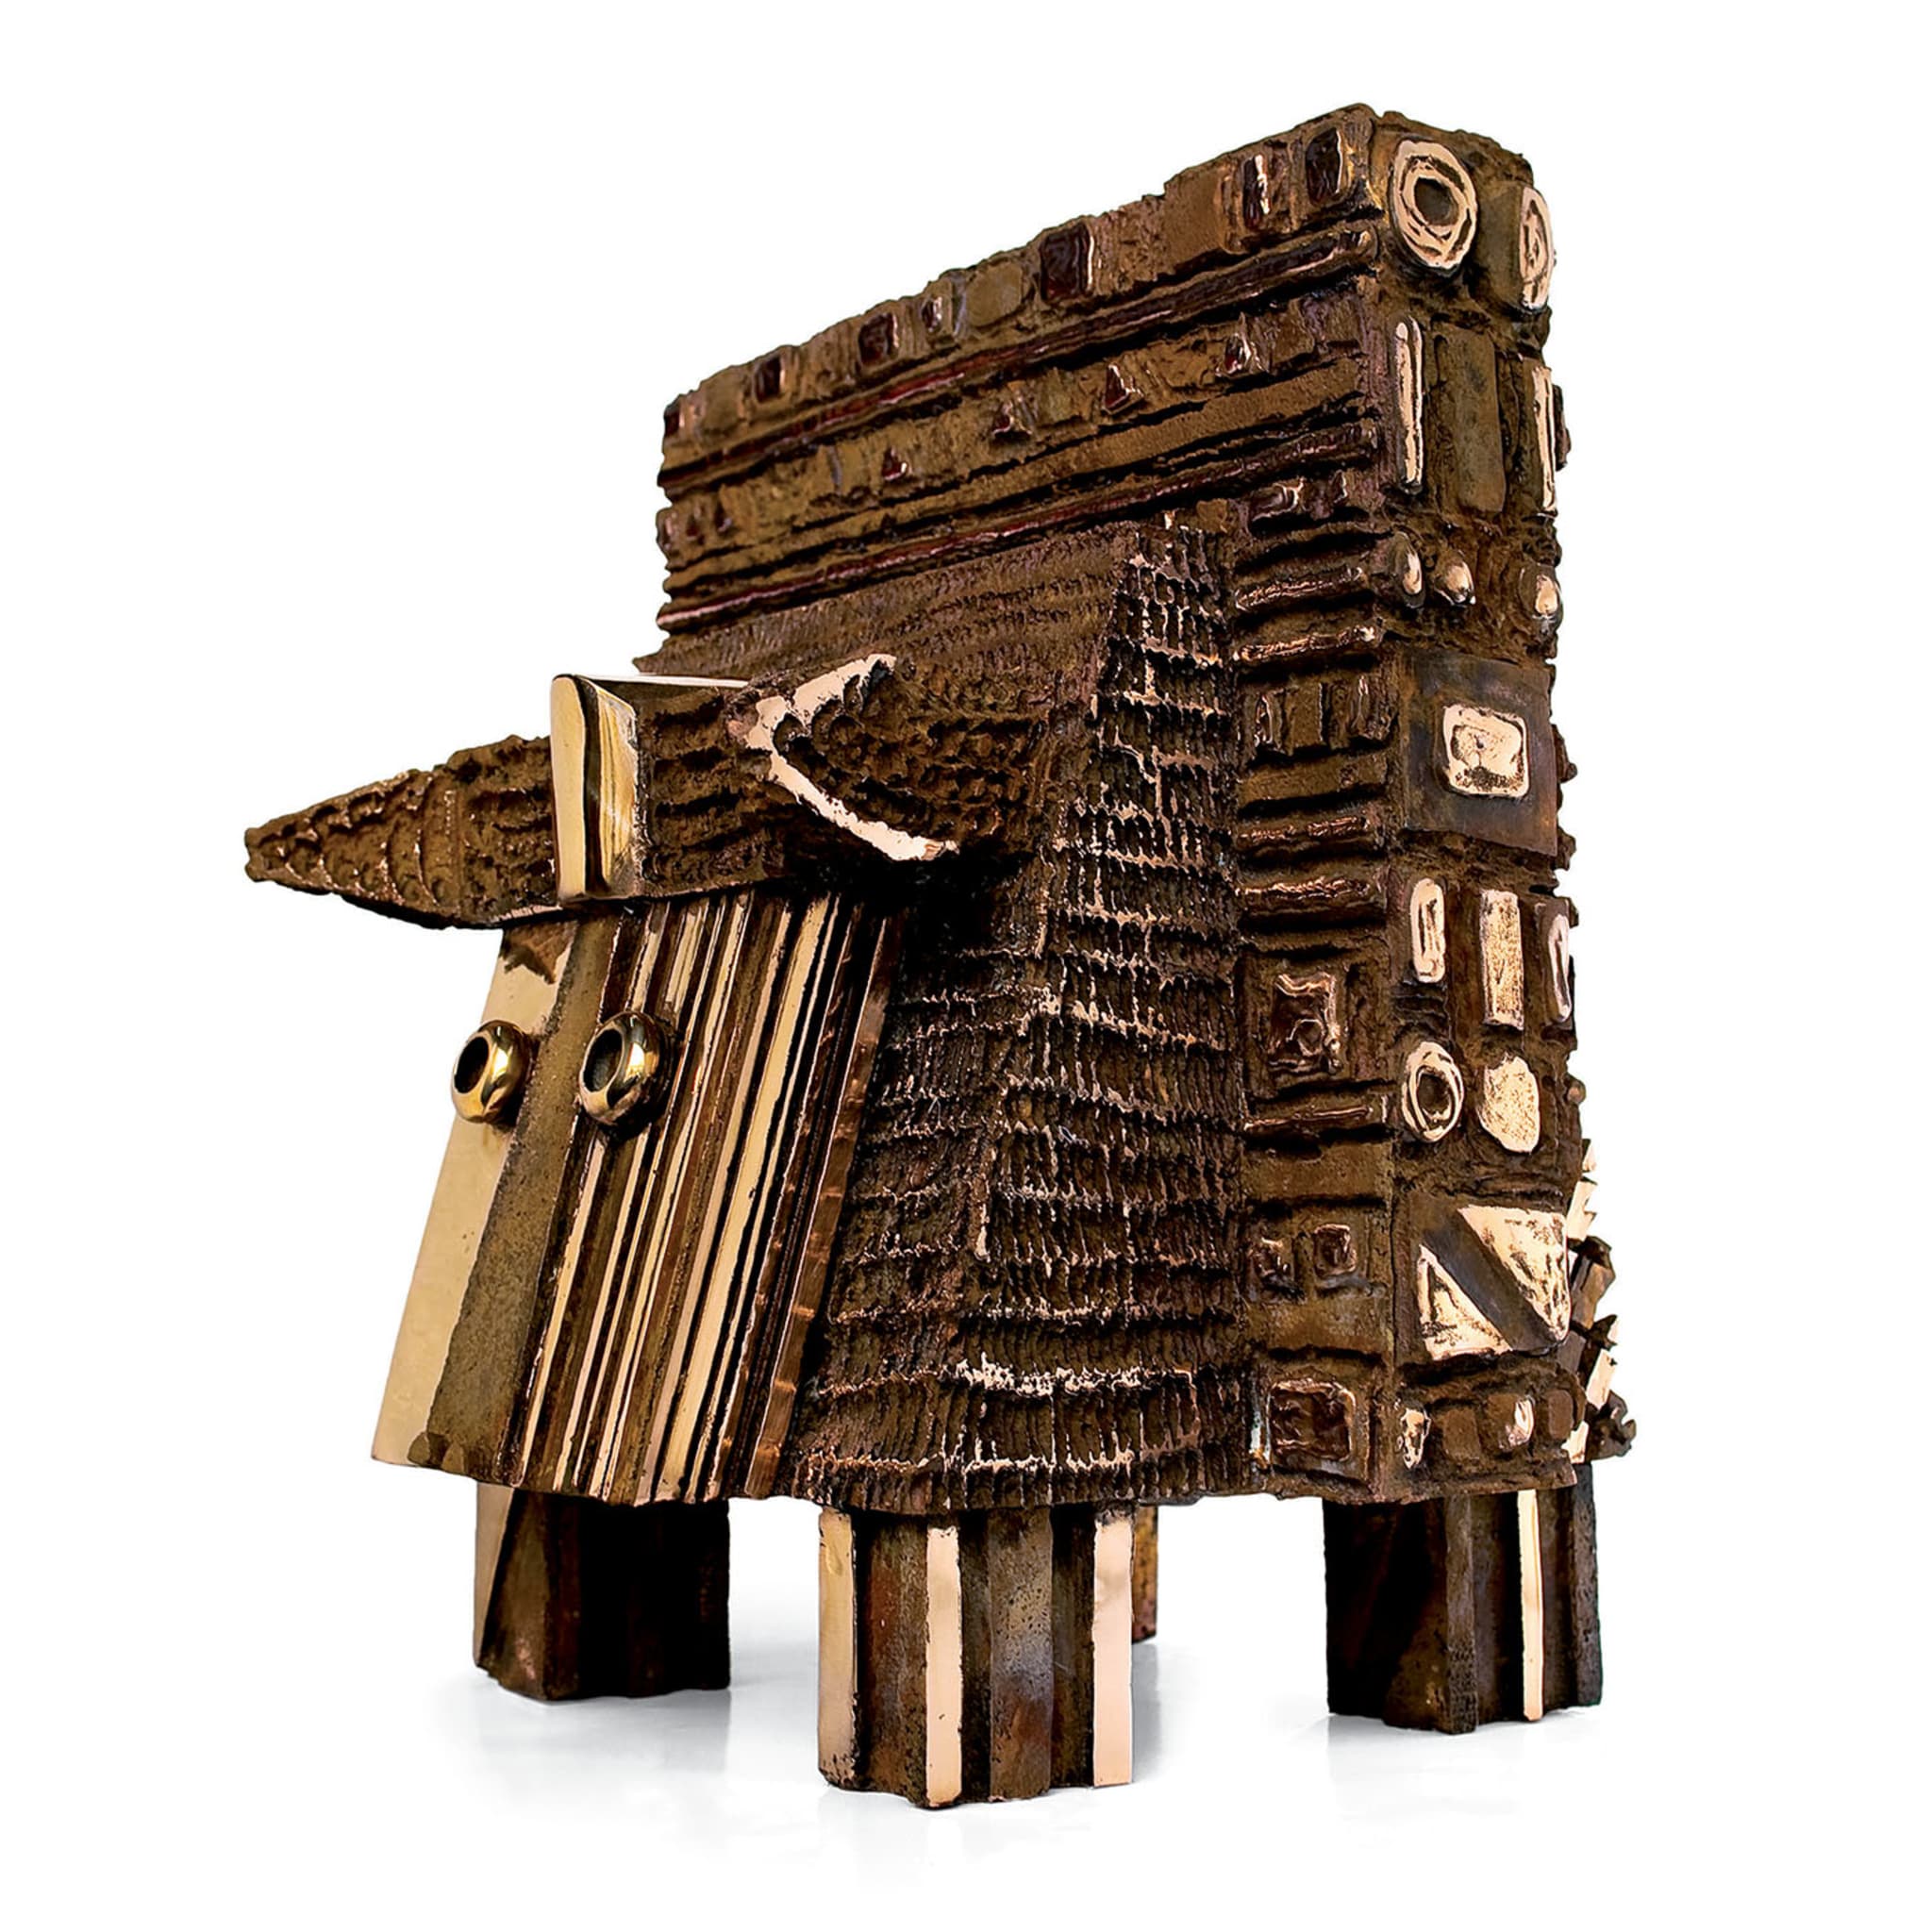 Il Toro dal Muso Mezzo d'Oro Sculpture - Alternative view 1